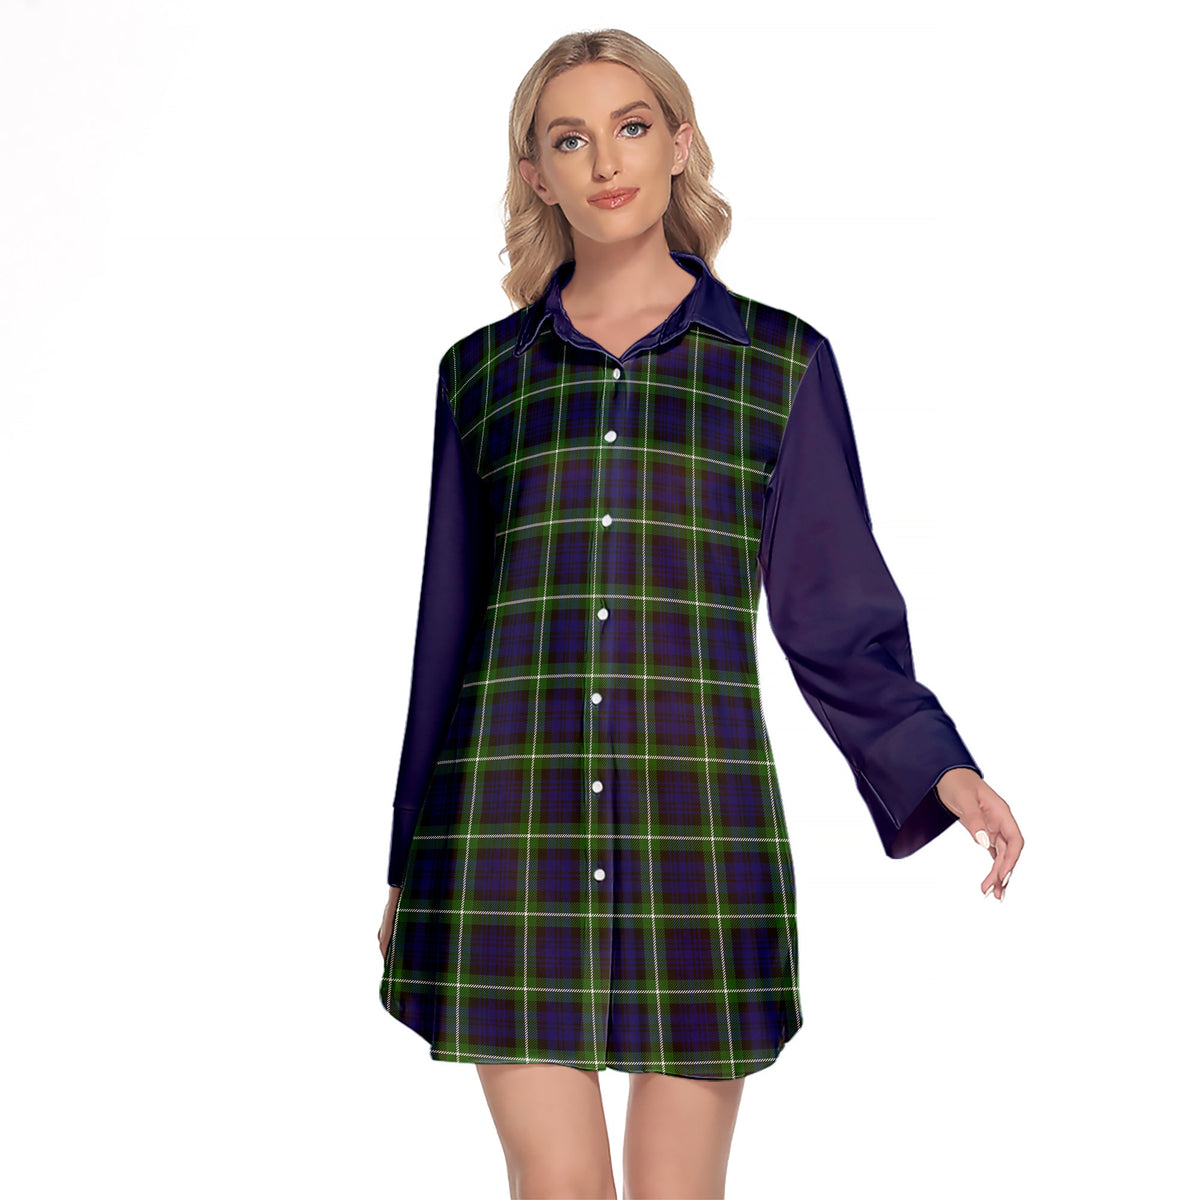 Lamont Modern Tartan Women's Lapel Shirt Dress With Long Sleeve